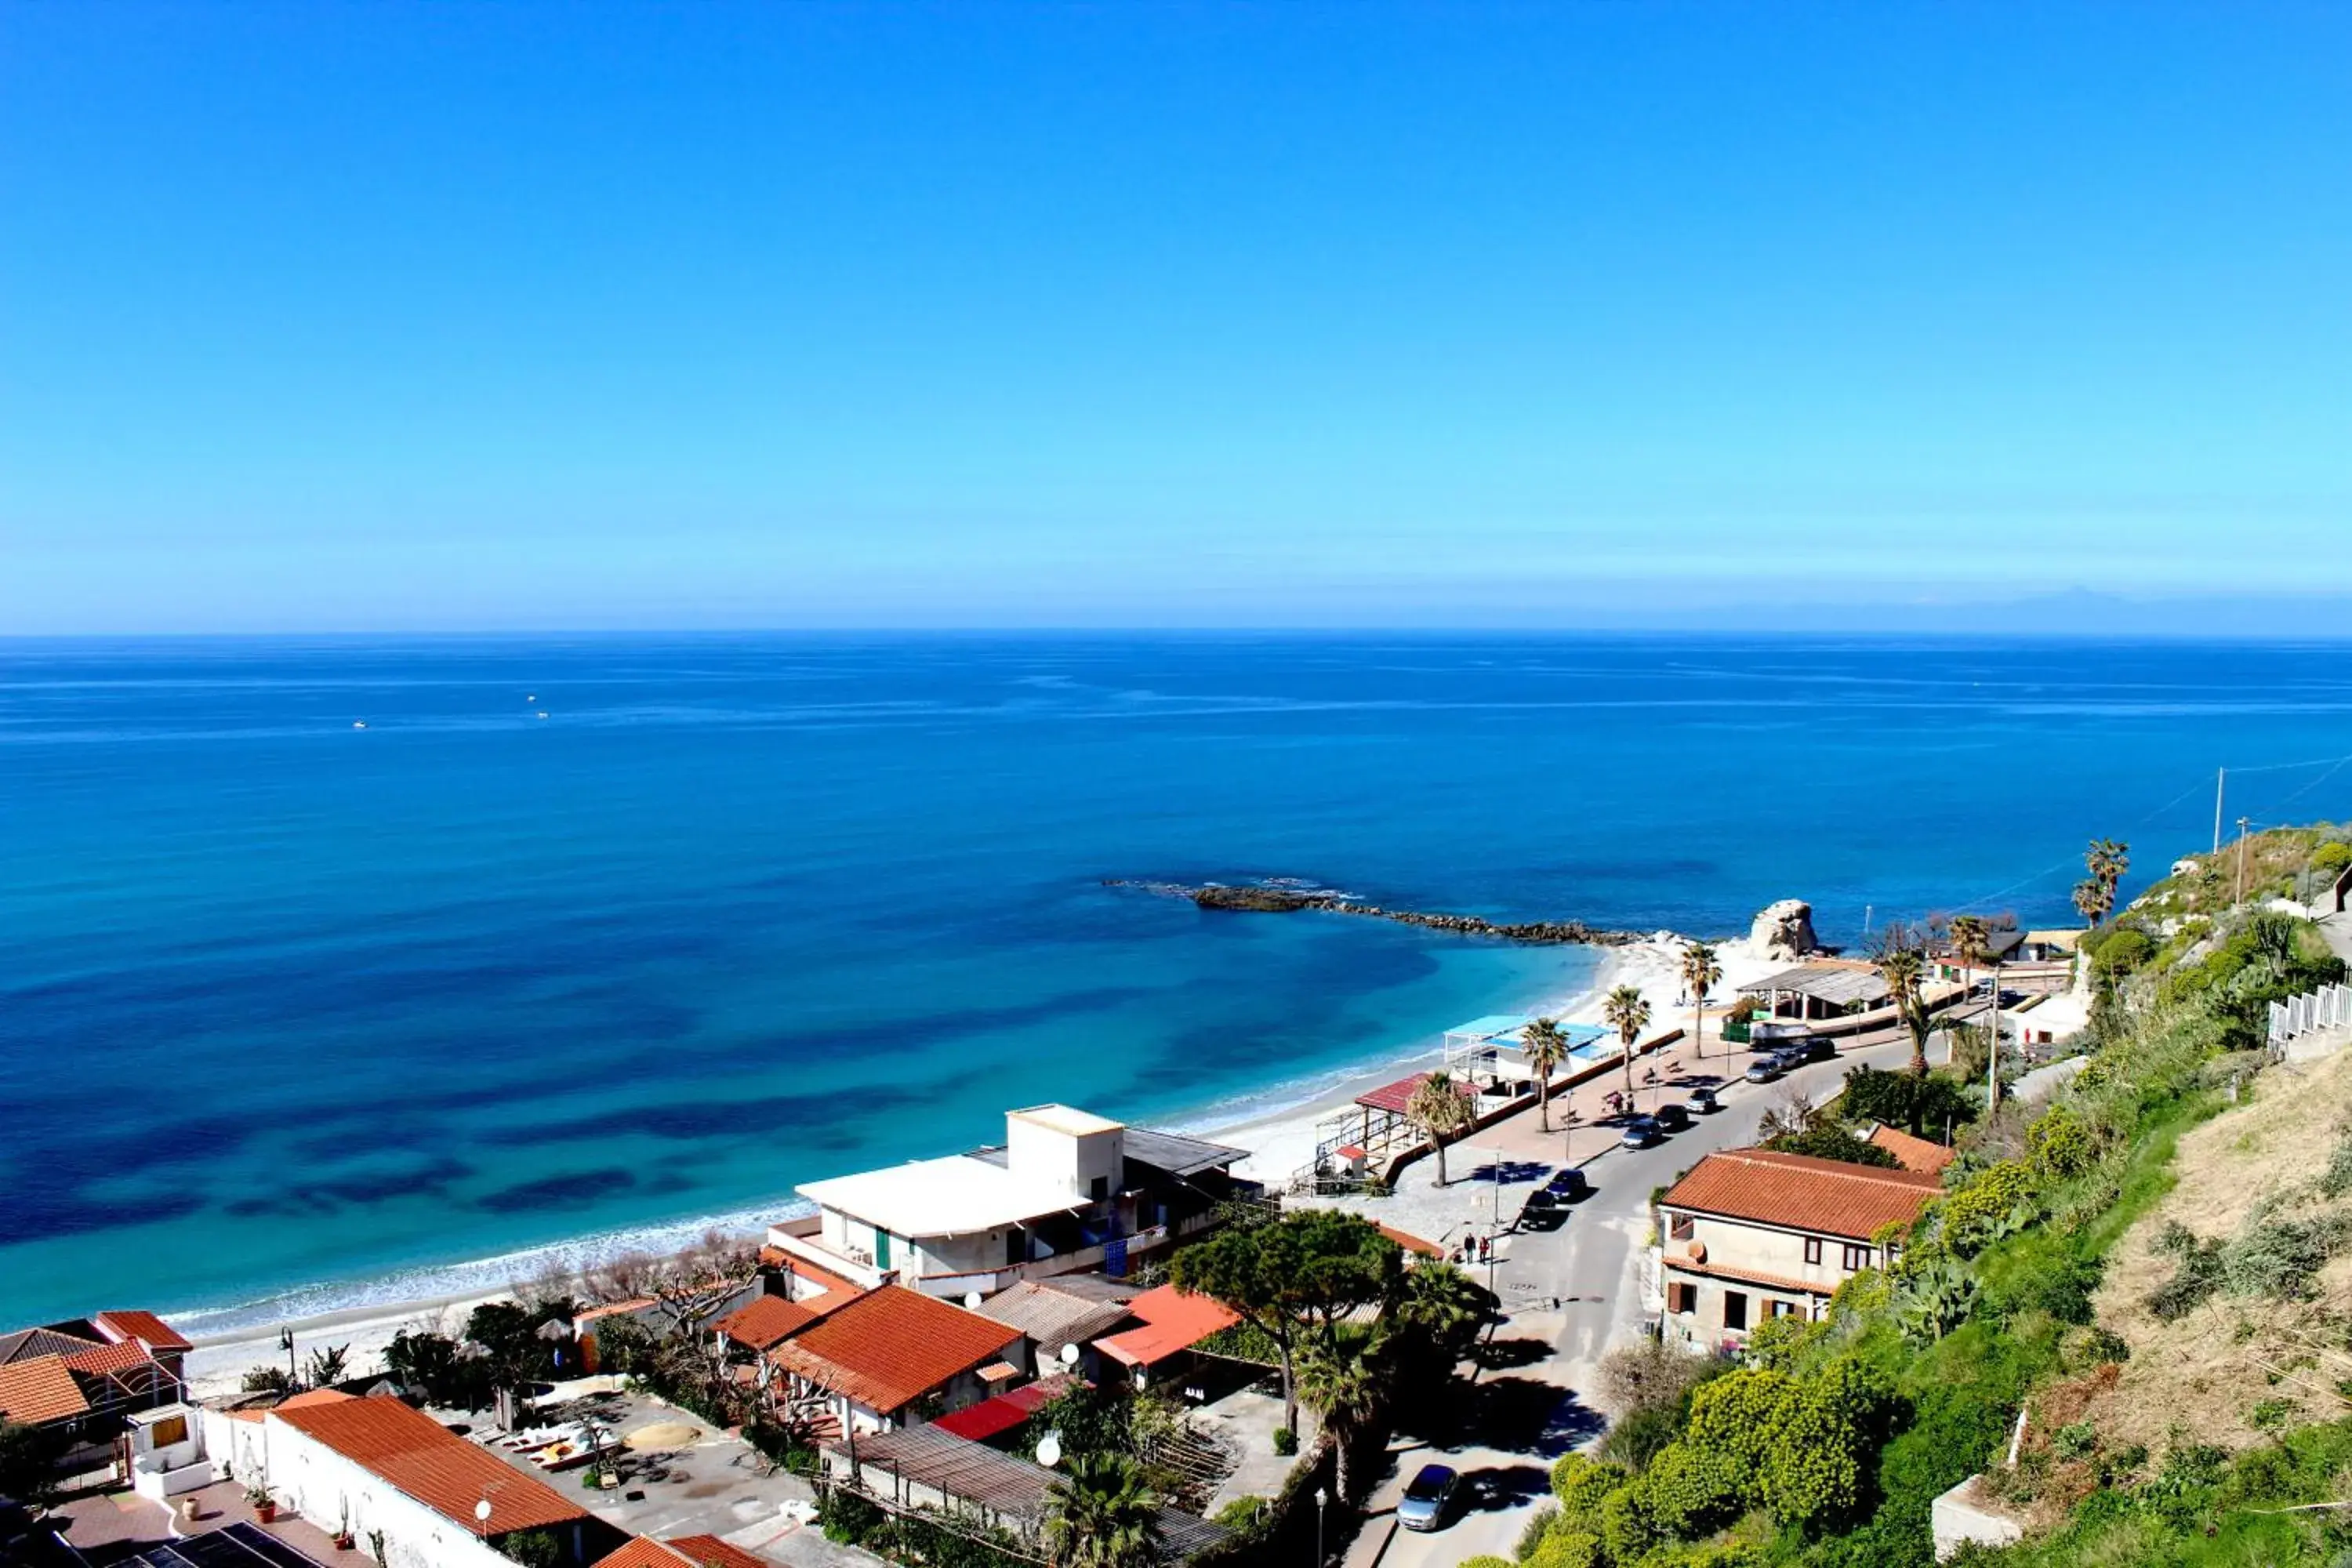 Day, Bird's-eye View in Hotel Terrazzo Sul Mare